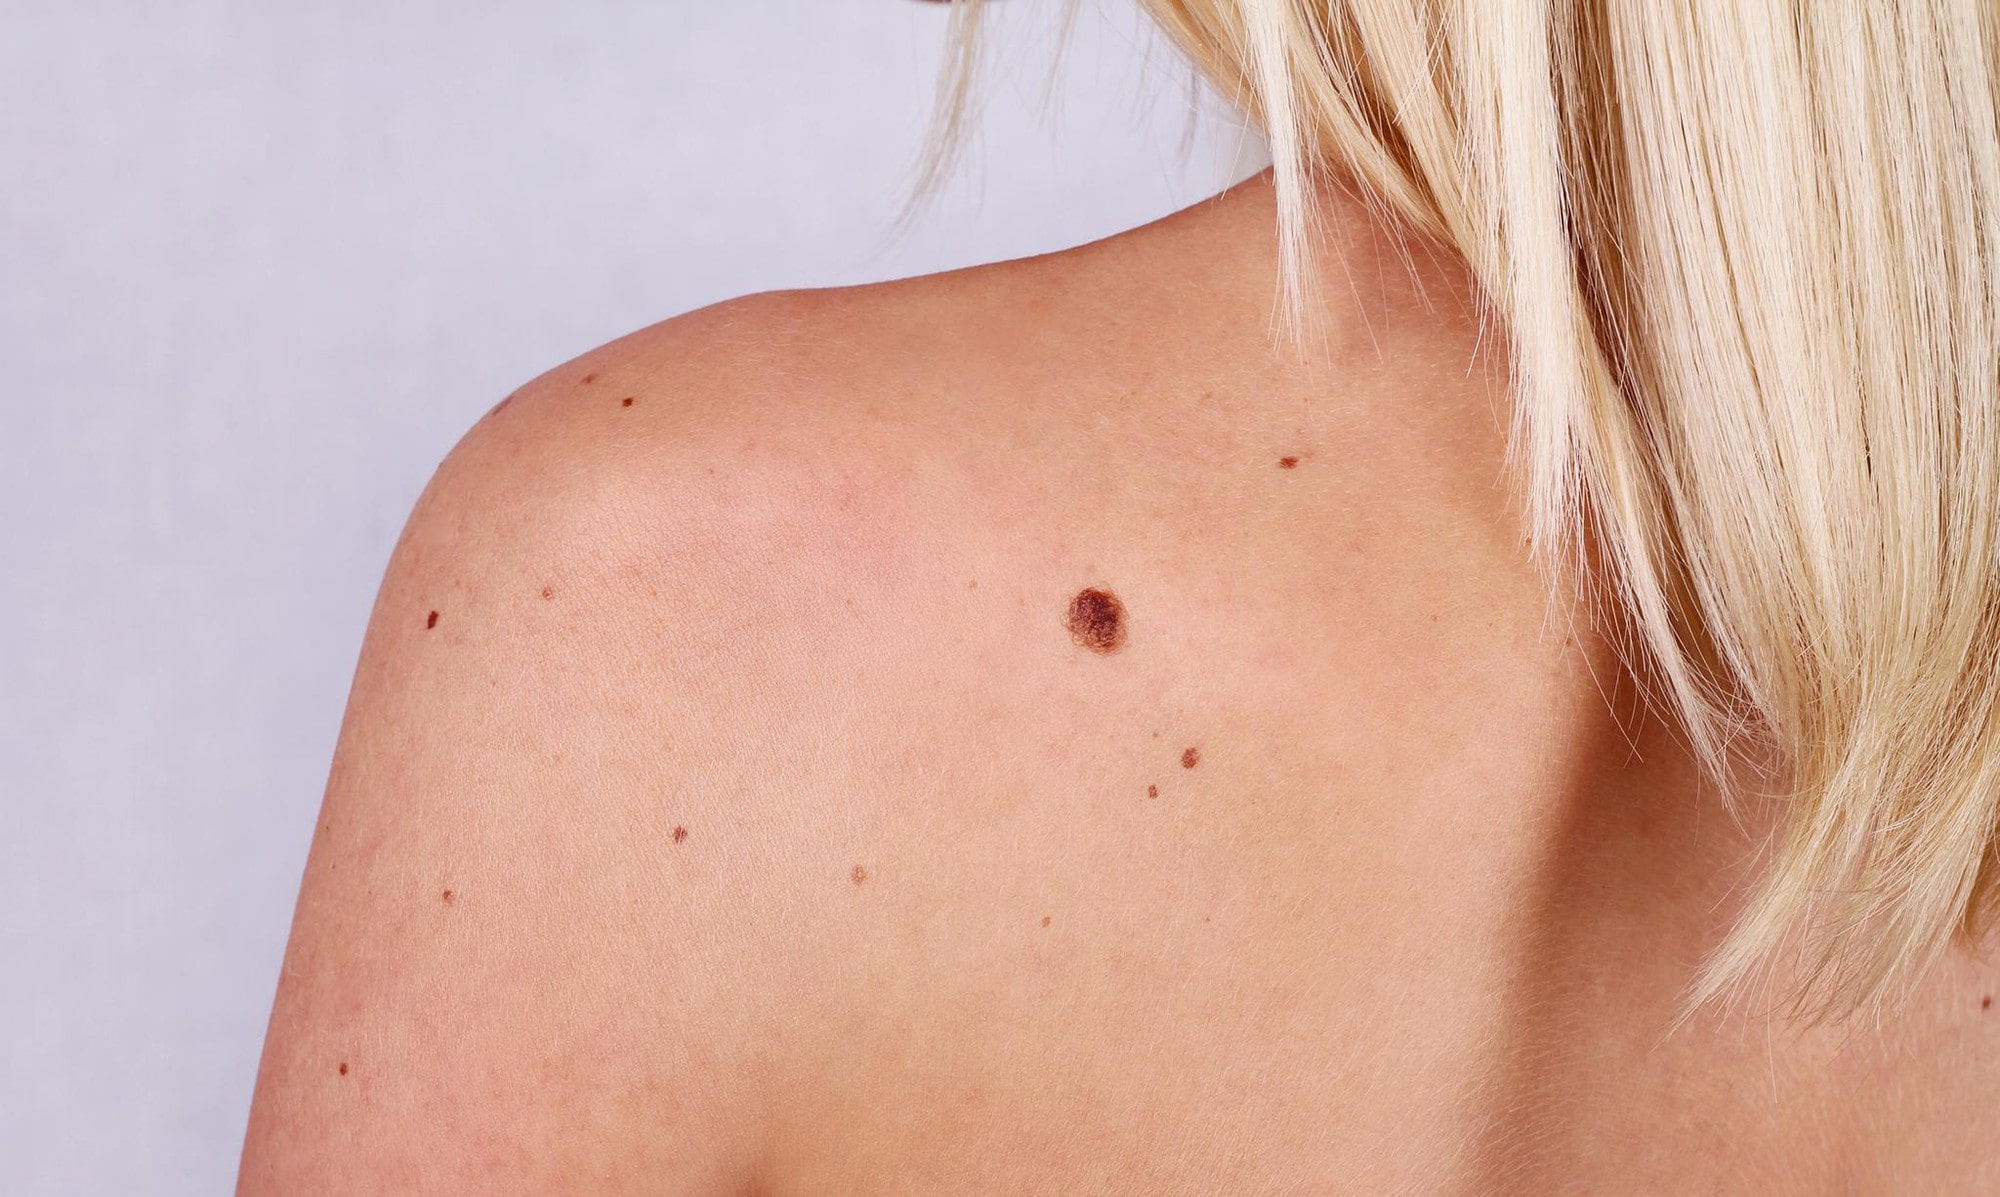   Sự thay đổi về các nốt ruồi trên da cũng có thể là dấu hiệu bệnh về da  